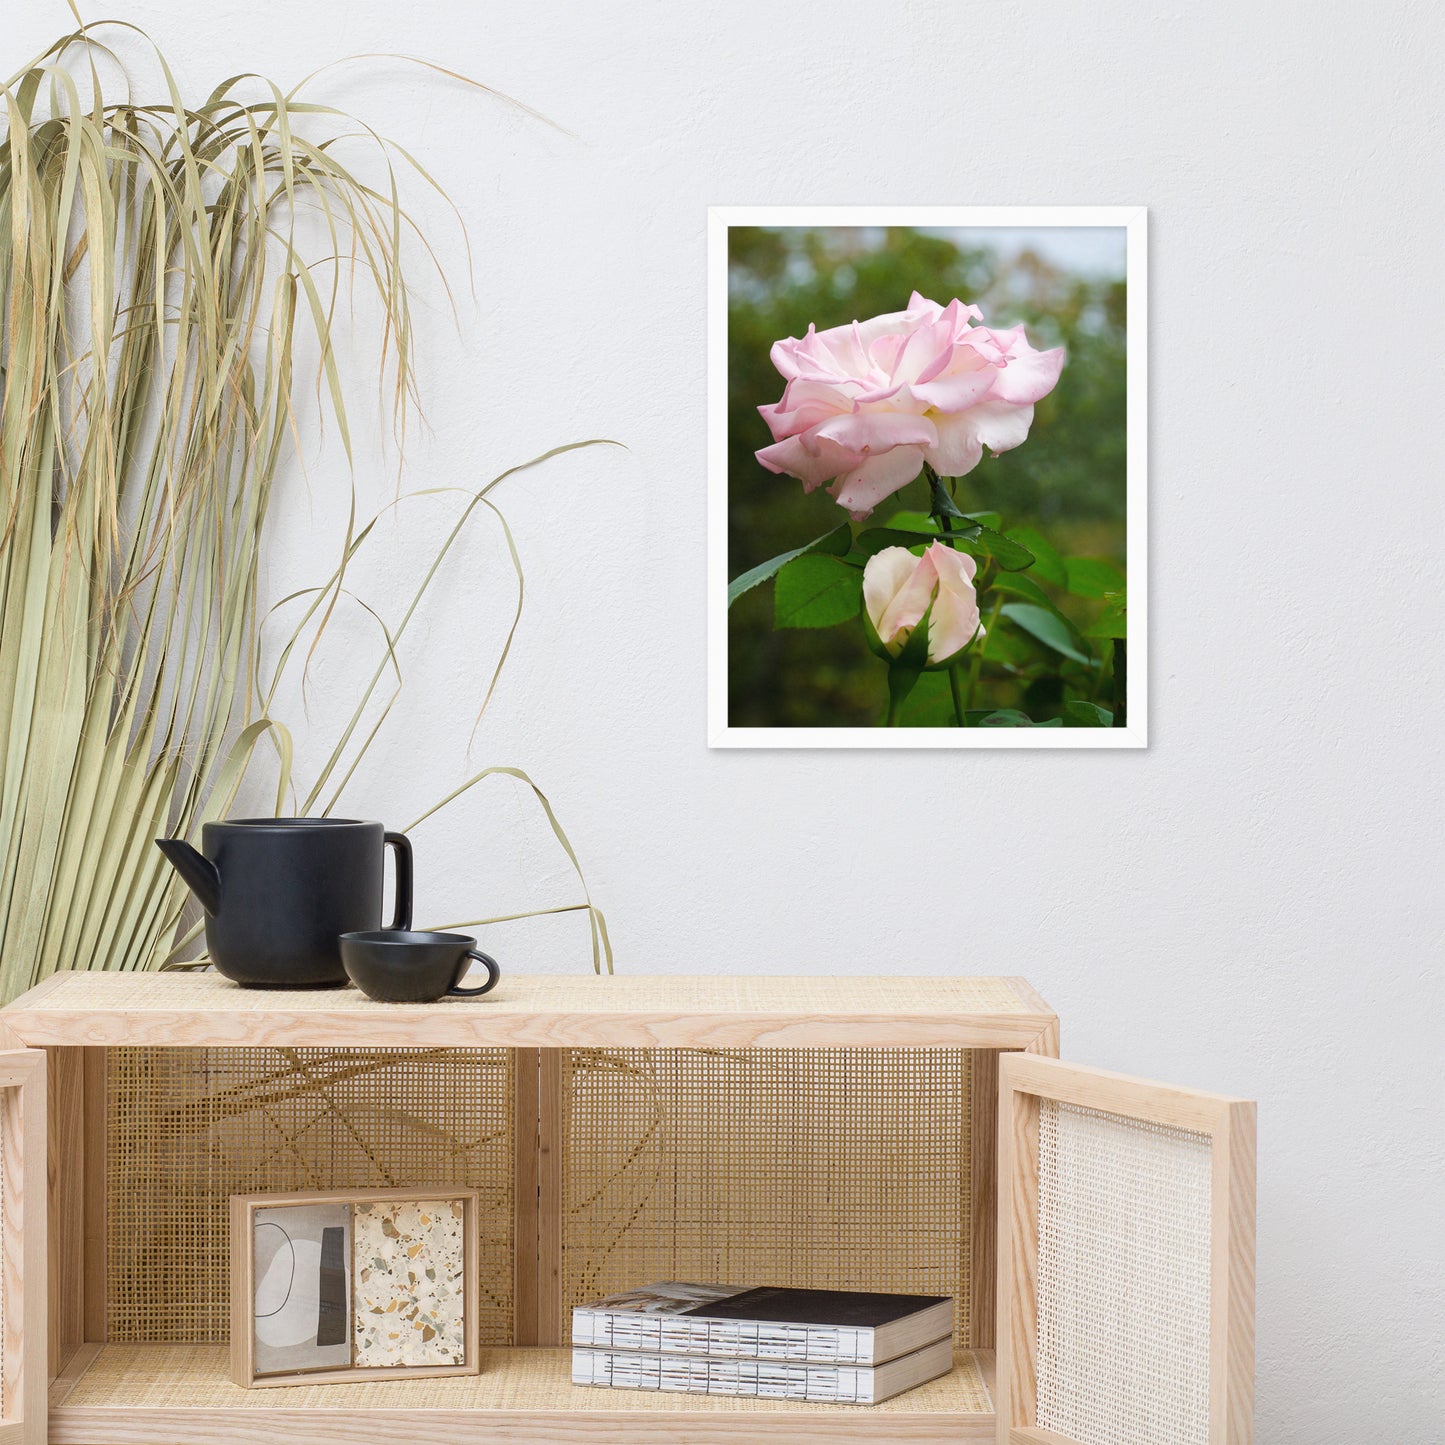 Framed Floral Artwork: Admiration - Pink Rose Floral / Botanical / Nature Photo Framed Wall Art Print - Artwork - Wall Decor - Home Decor